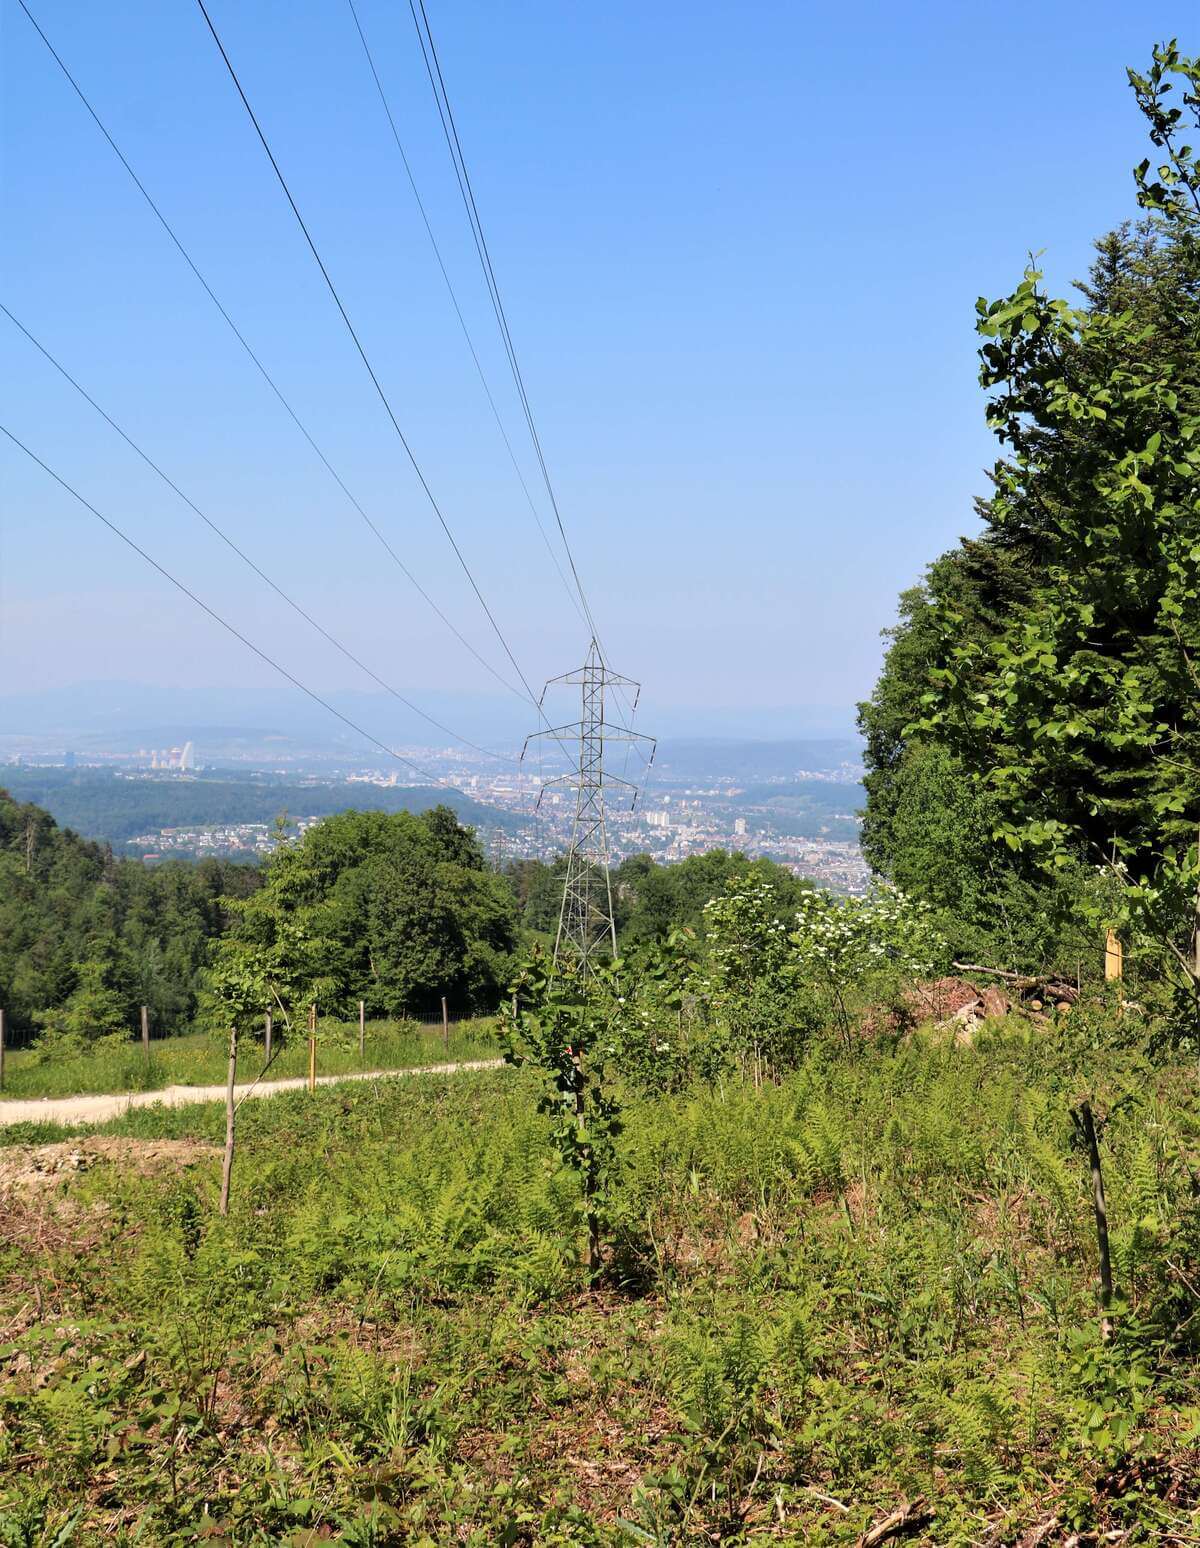 Blick über eine Wiese mit Sträuchern, über die eine Stromleitung verläuft. Im Hintergrund eine Stadt.